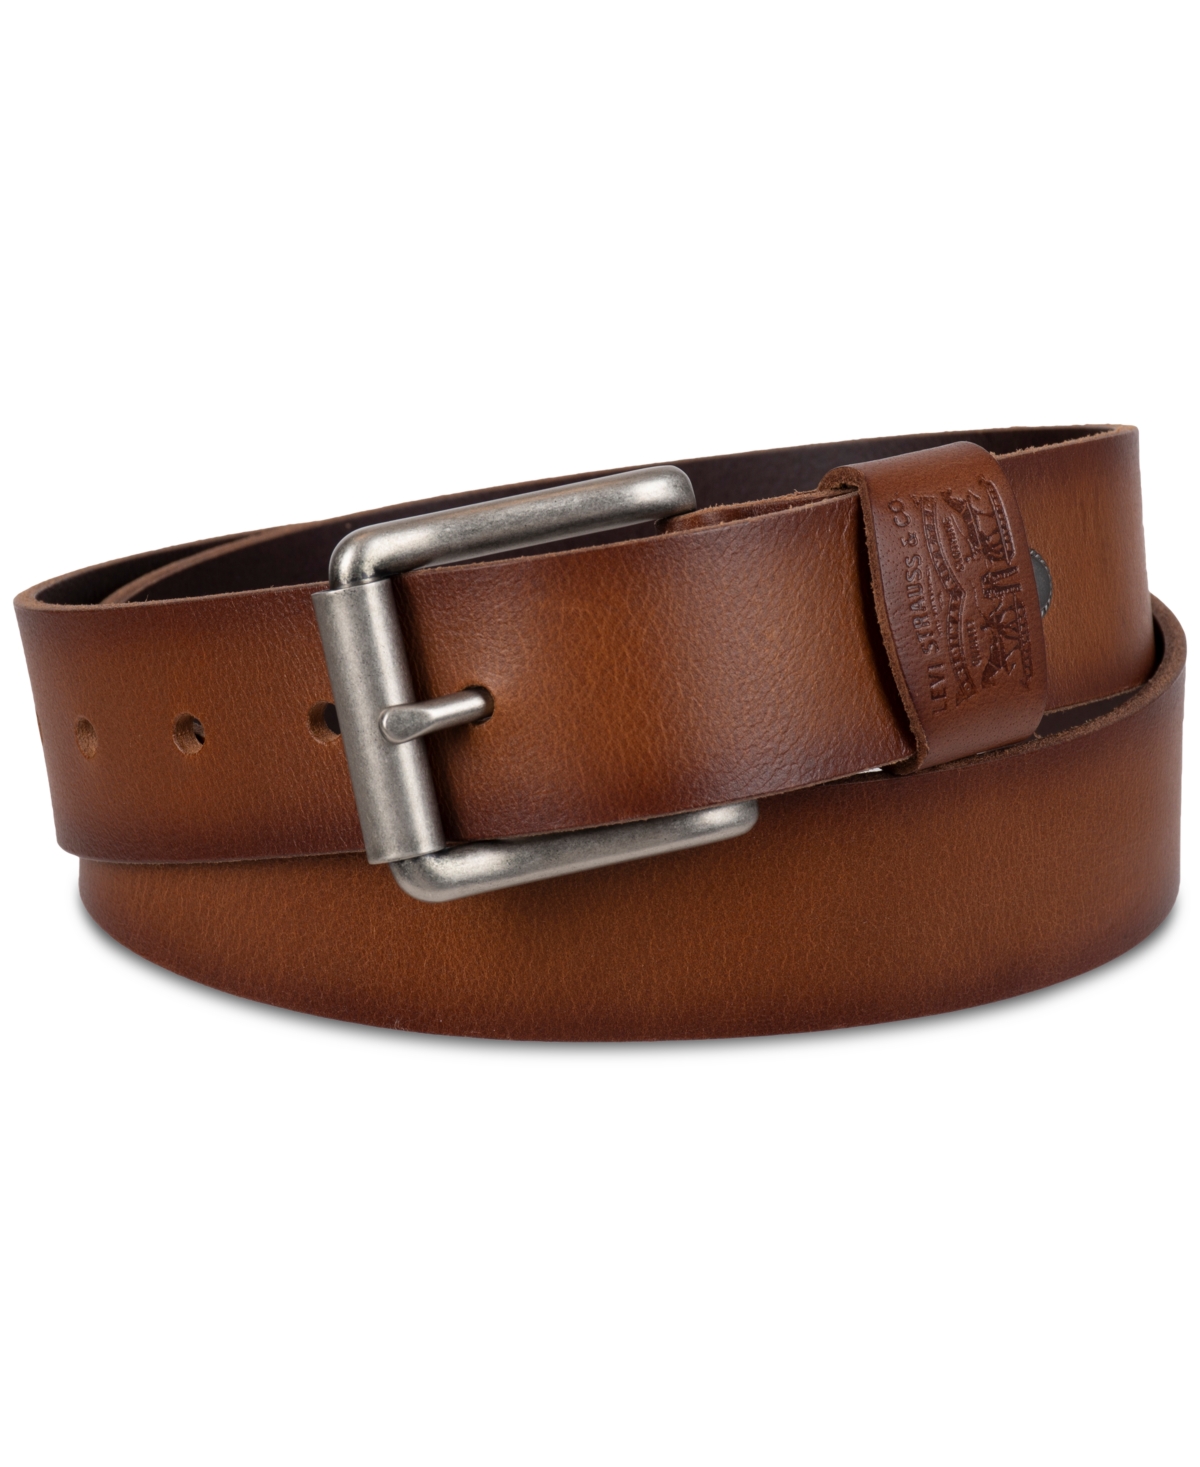 Men's Western Leather Belt - Tan